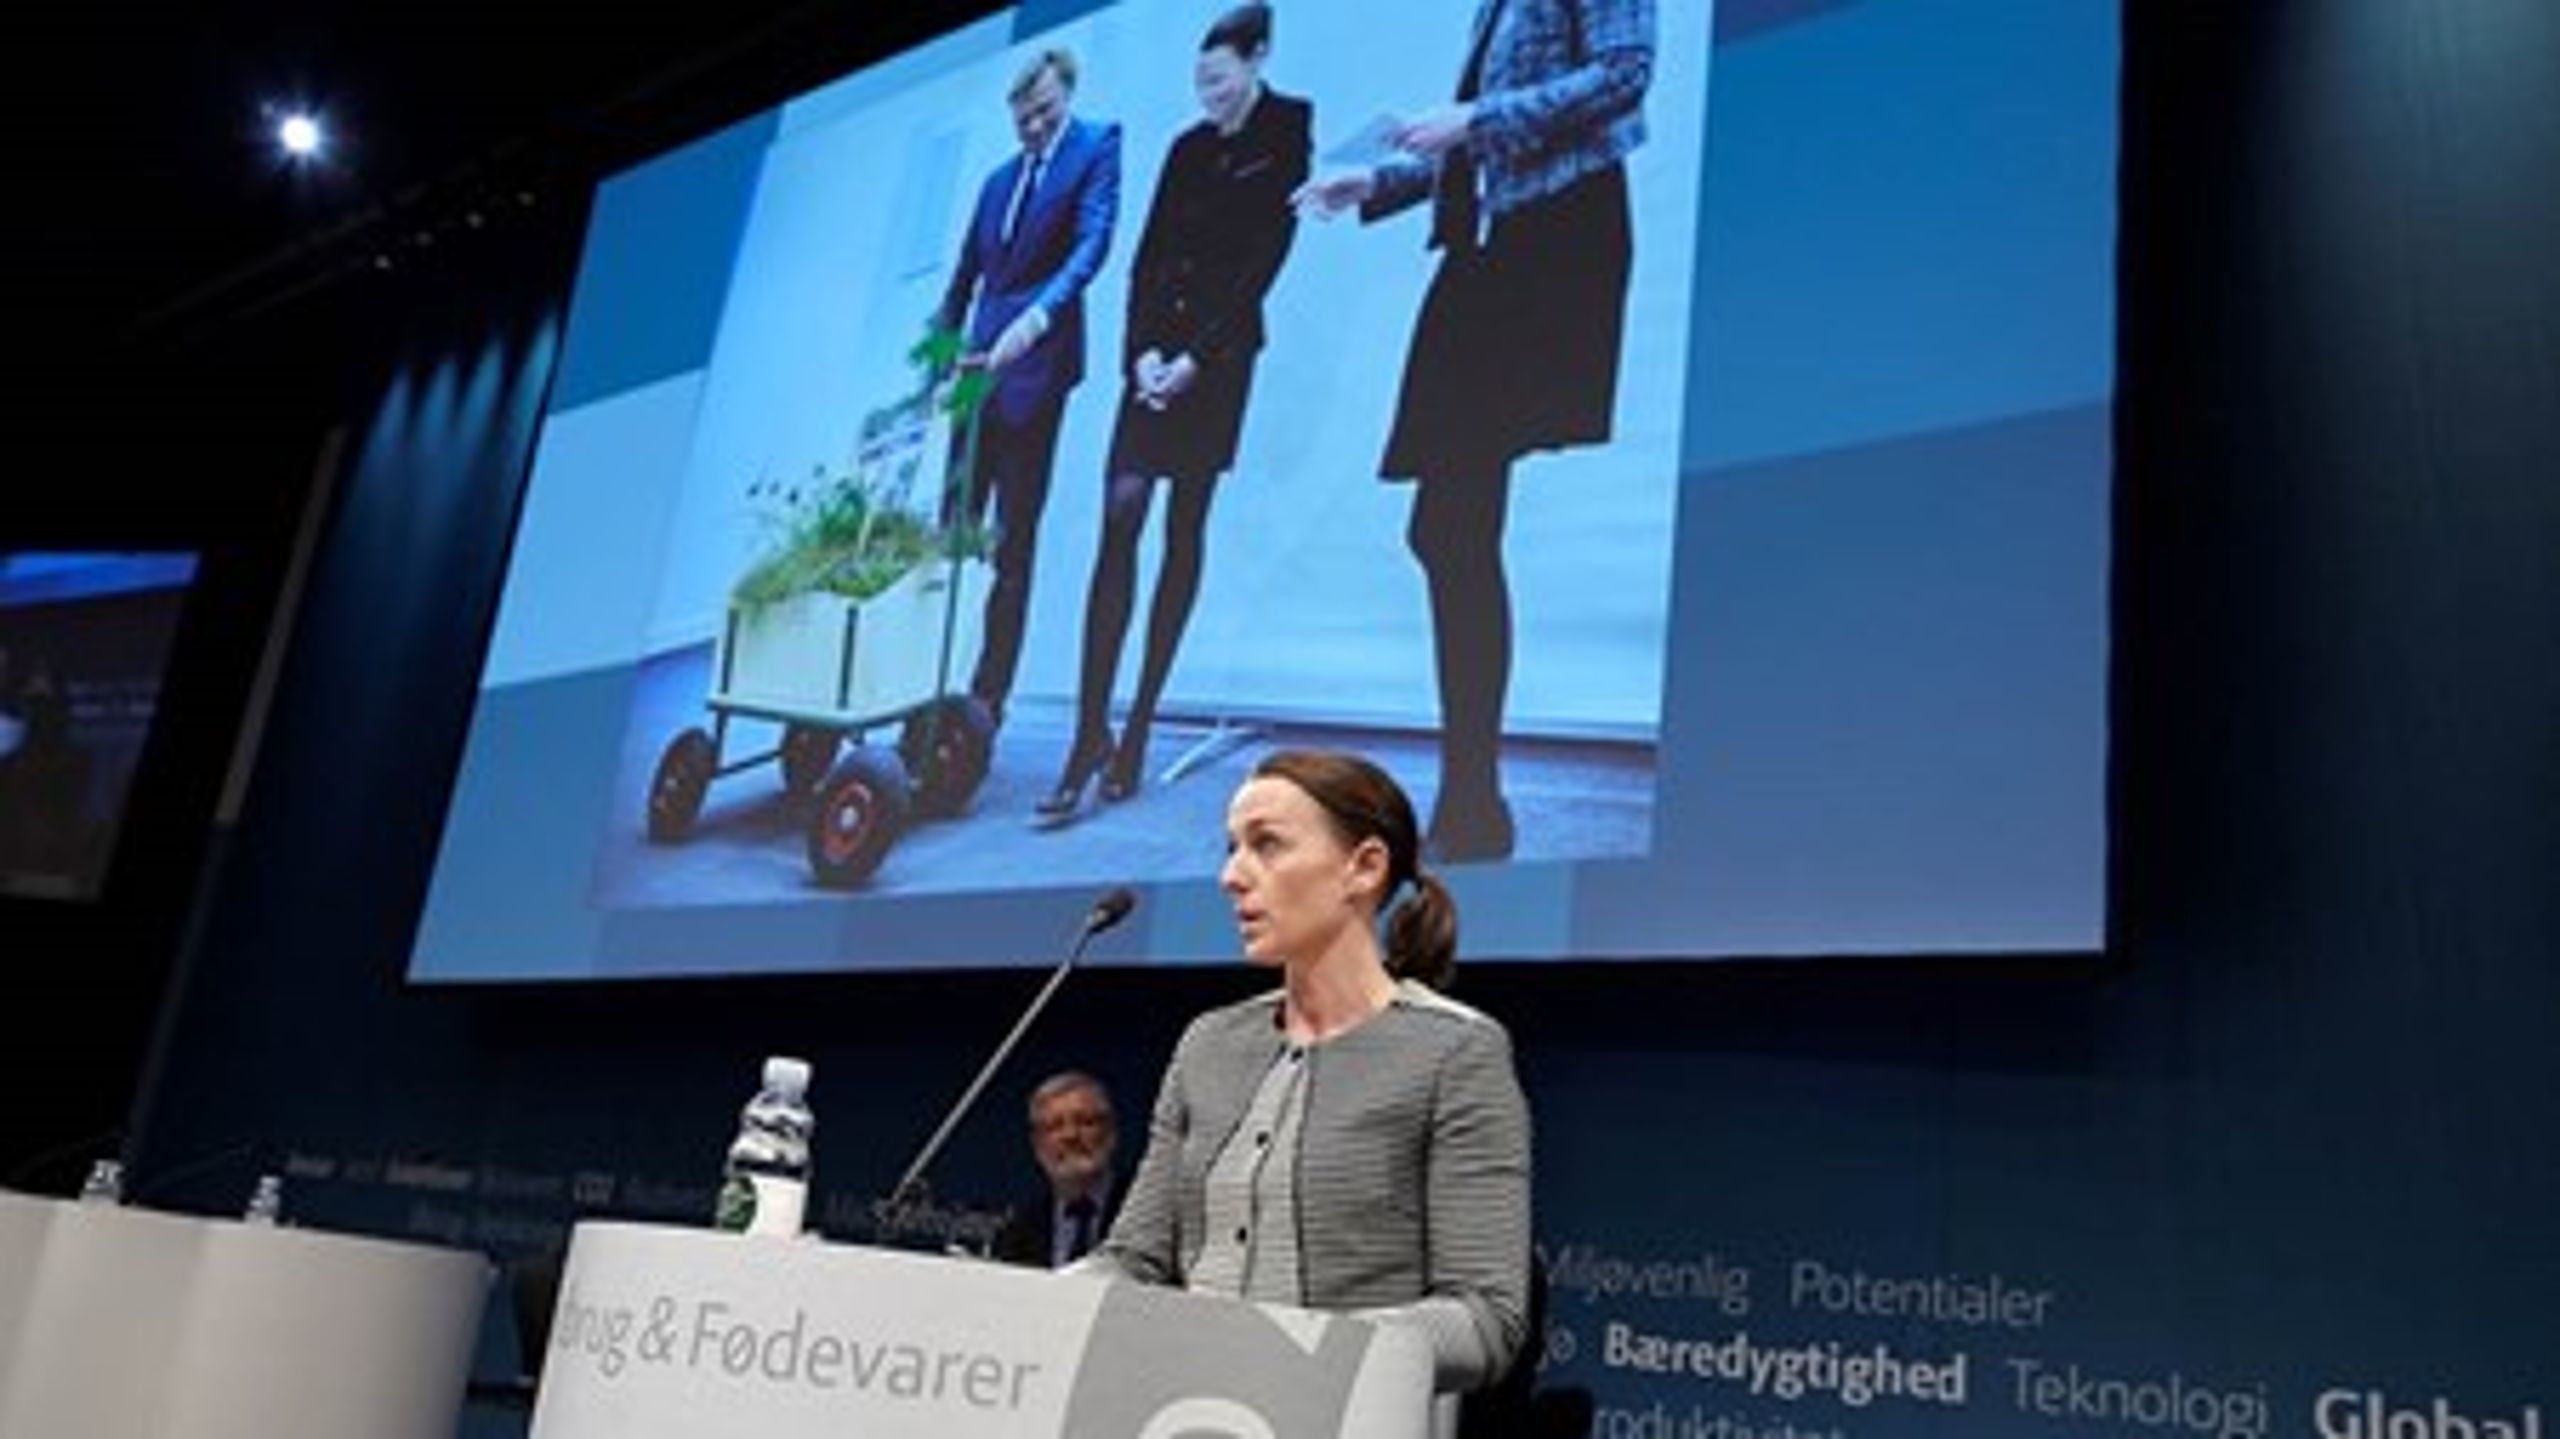 Miljøminister Kirsten Brosbøl (S) mente, at landmændene hellere skulle fokusere på deres egne økonomiske underskud end skælde ud på miljølovgivningen, da hun kom på talerstolen til delegeretmøde.&nbsp;